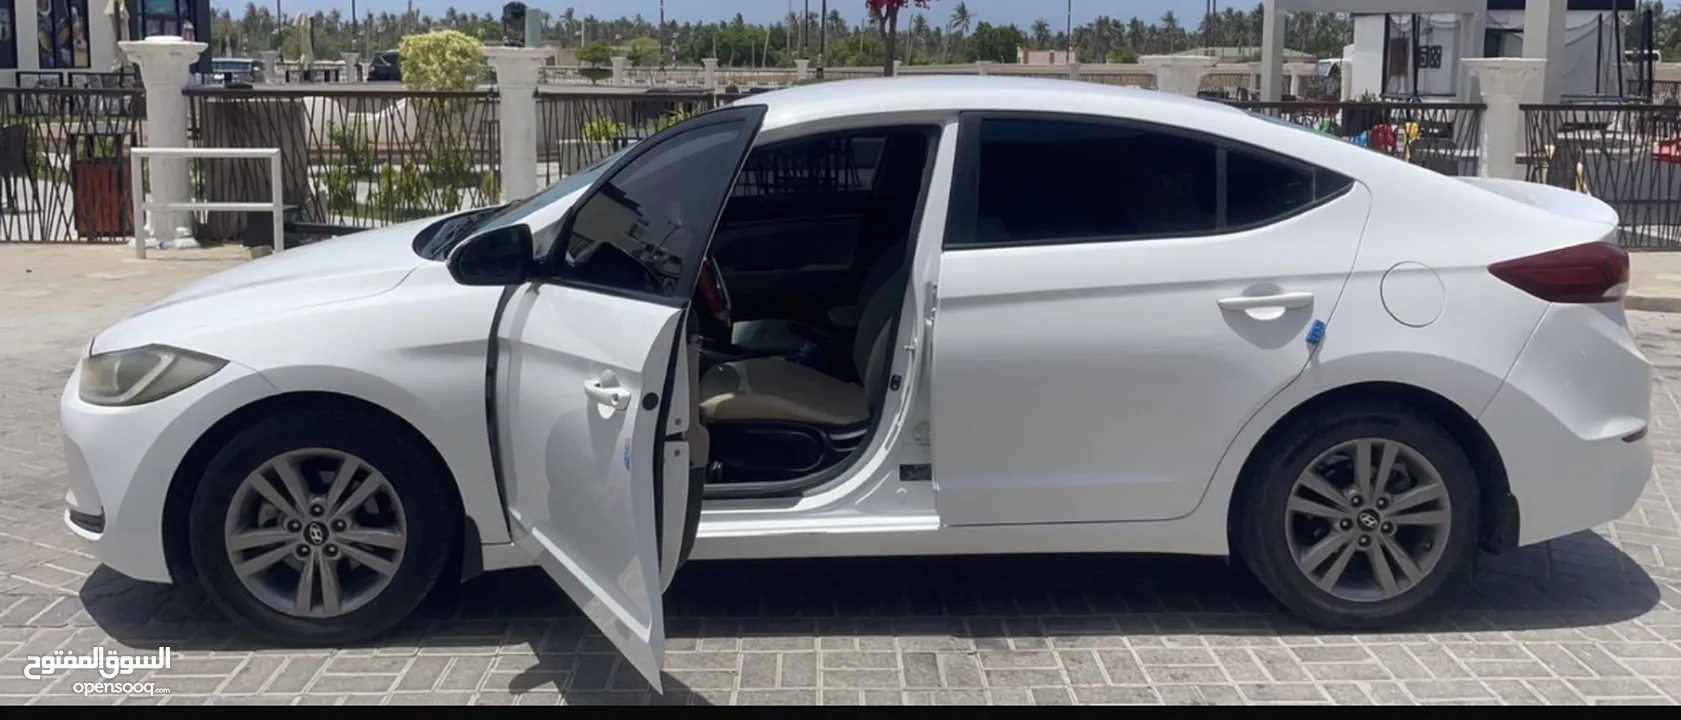 النتر وكالة عمان سيارةخليجي نظيف جدا قابل التفويض السعر السيارة